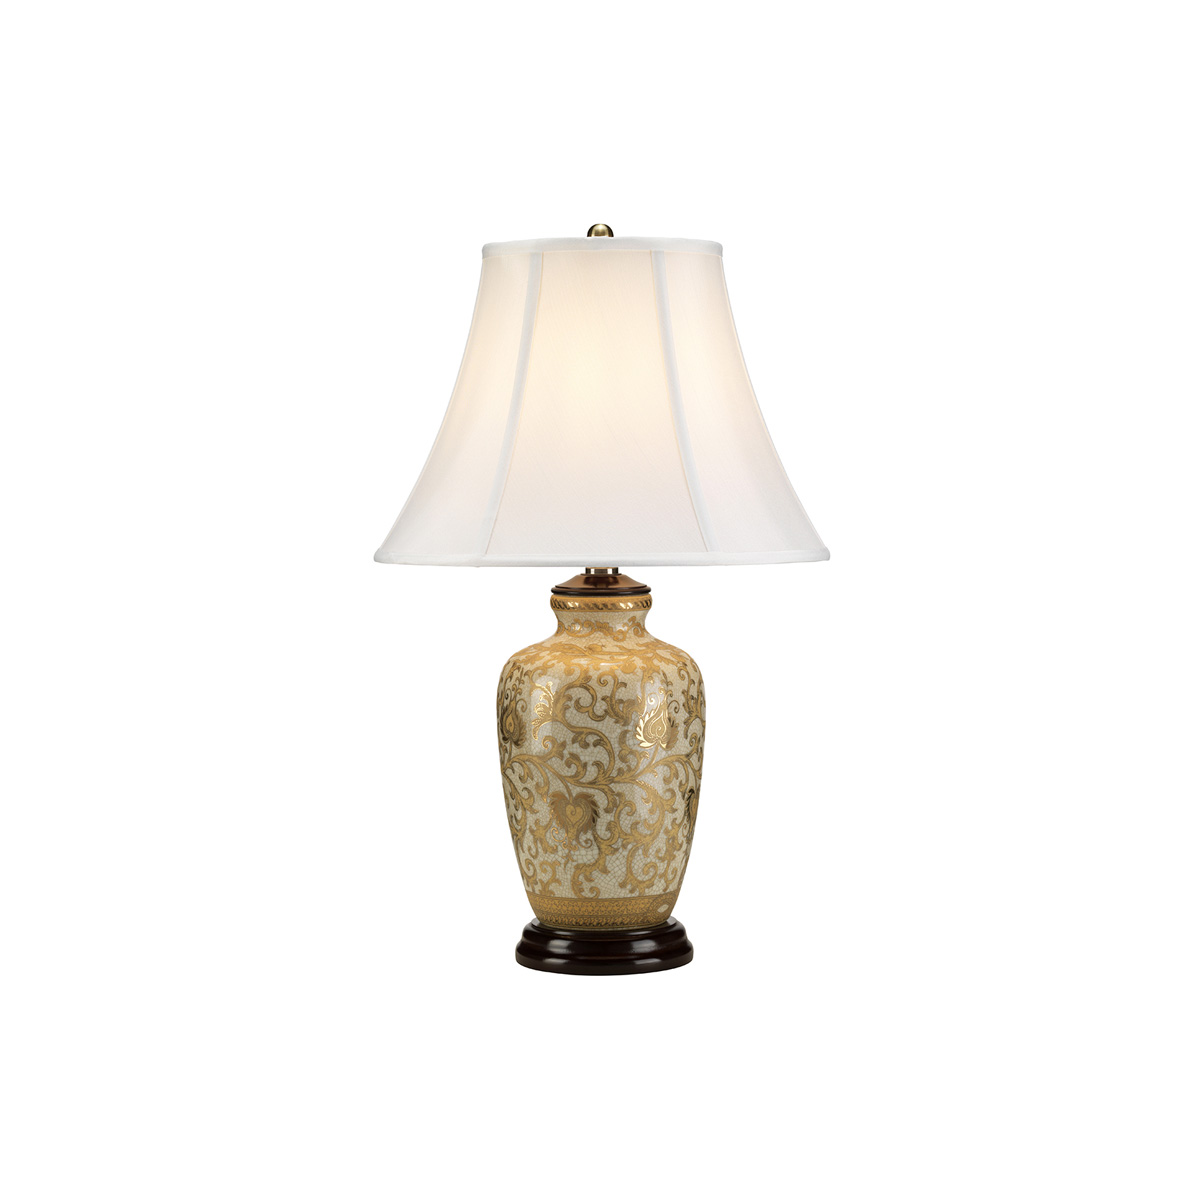 Настольная лампа GOLD-THISTLE-TL, Настольные лампы Эклектика/Традиционный | Керамика | Прихожая, спальня, гостиная, столовая.